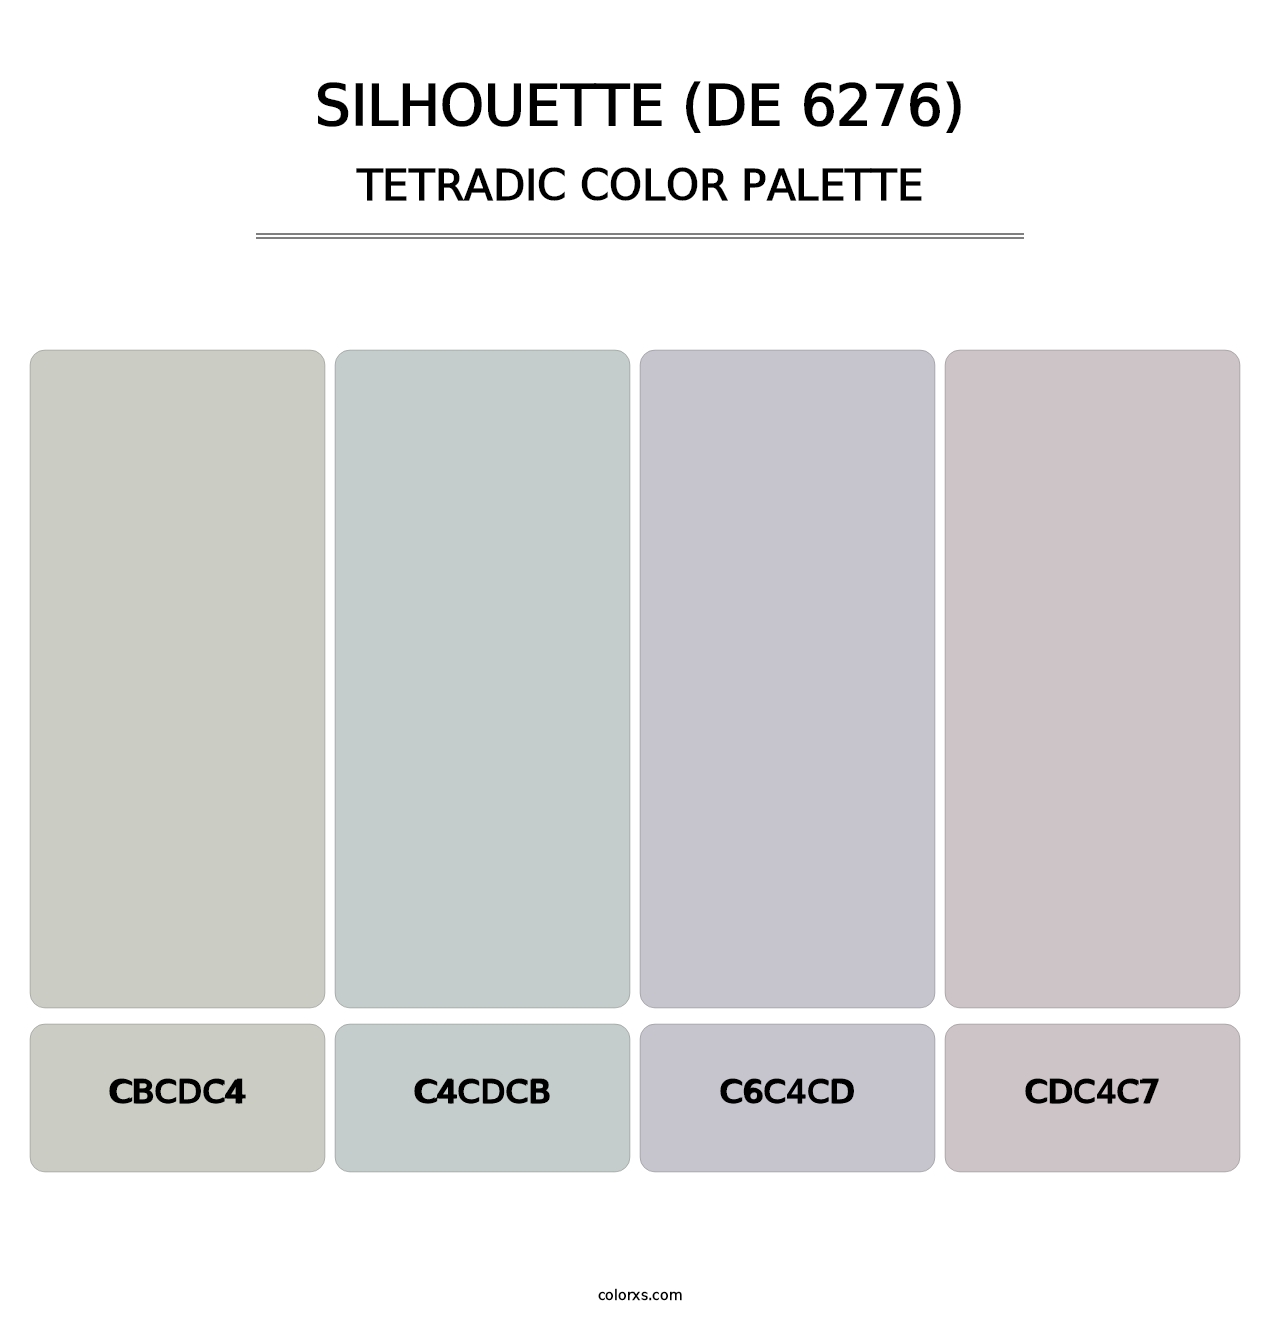 Silhouette (DE 6276) - Tetradic Color Palette